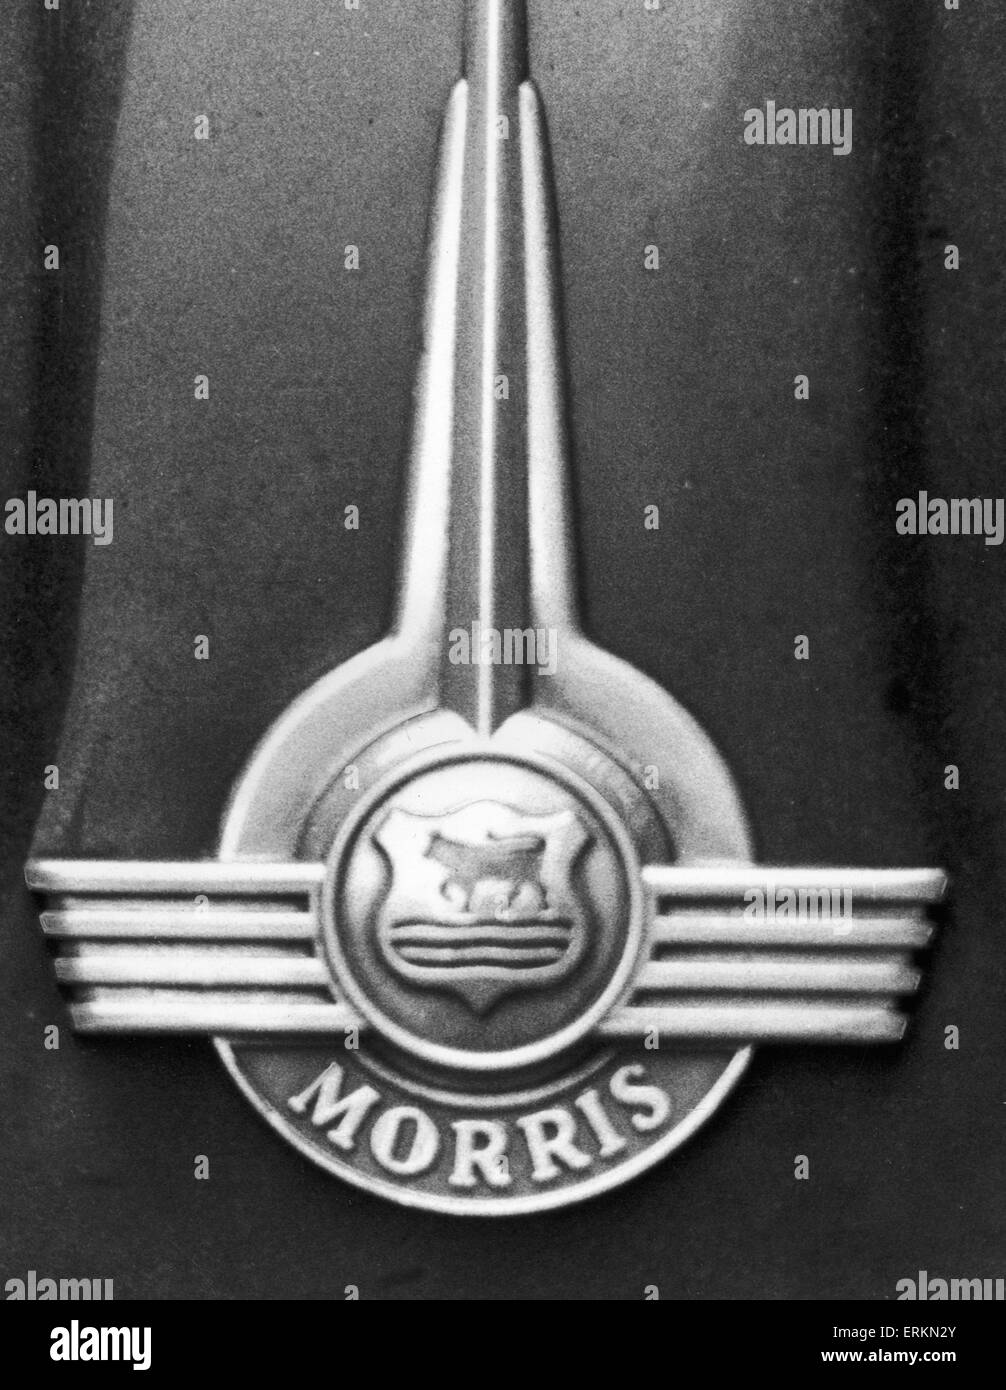 Morris Bonnet badge  7th December 1974 Stock Photo